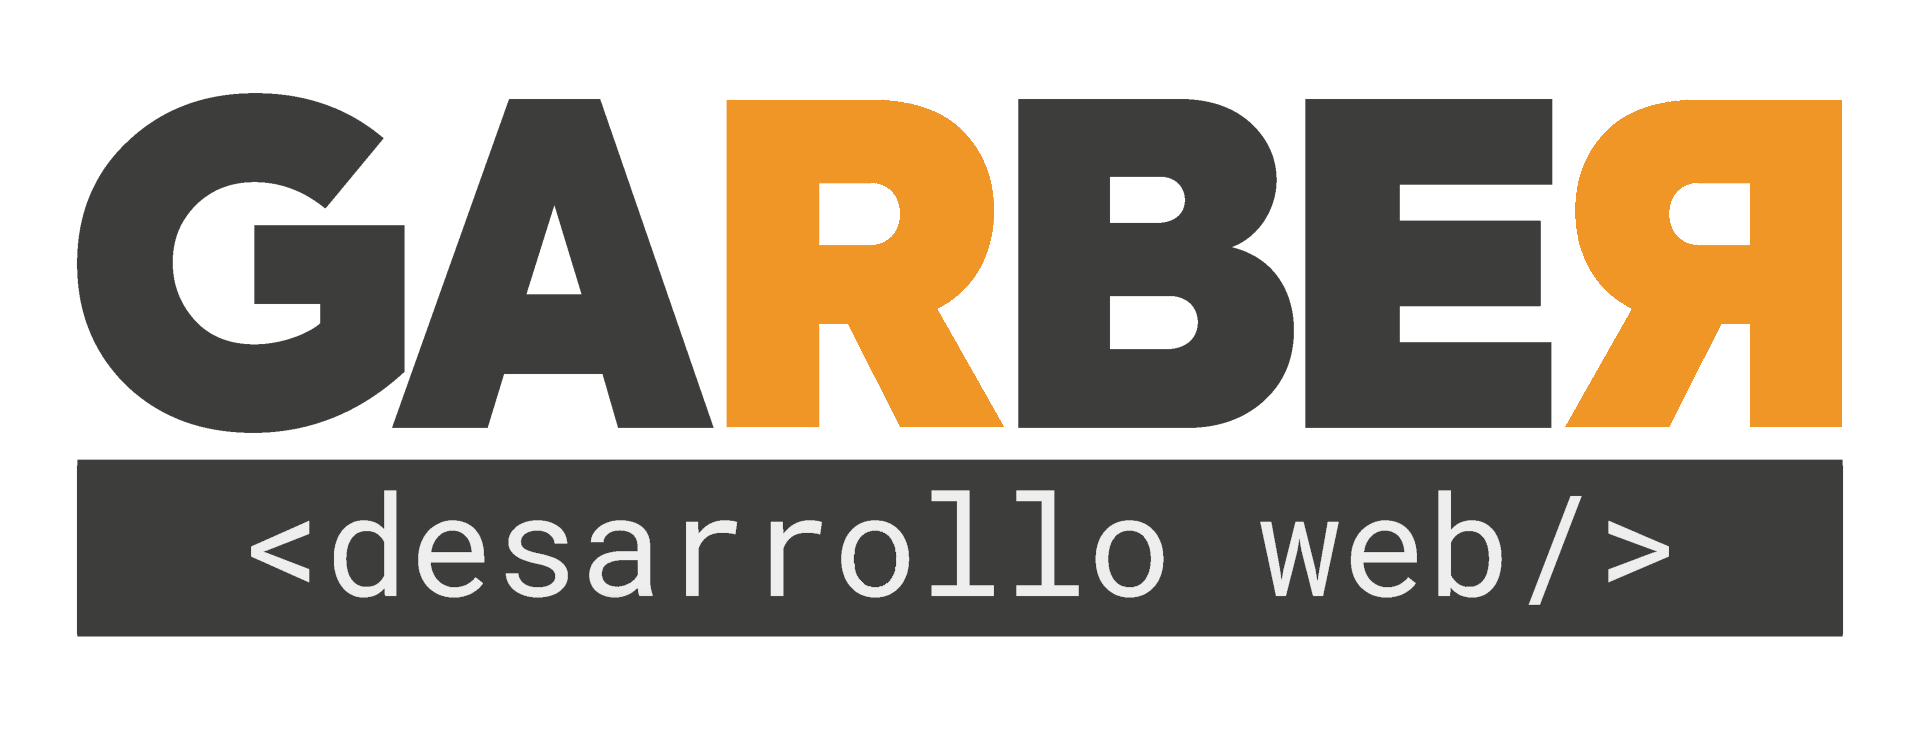 Garber Web Solutions SL